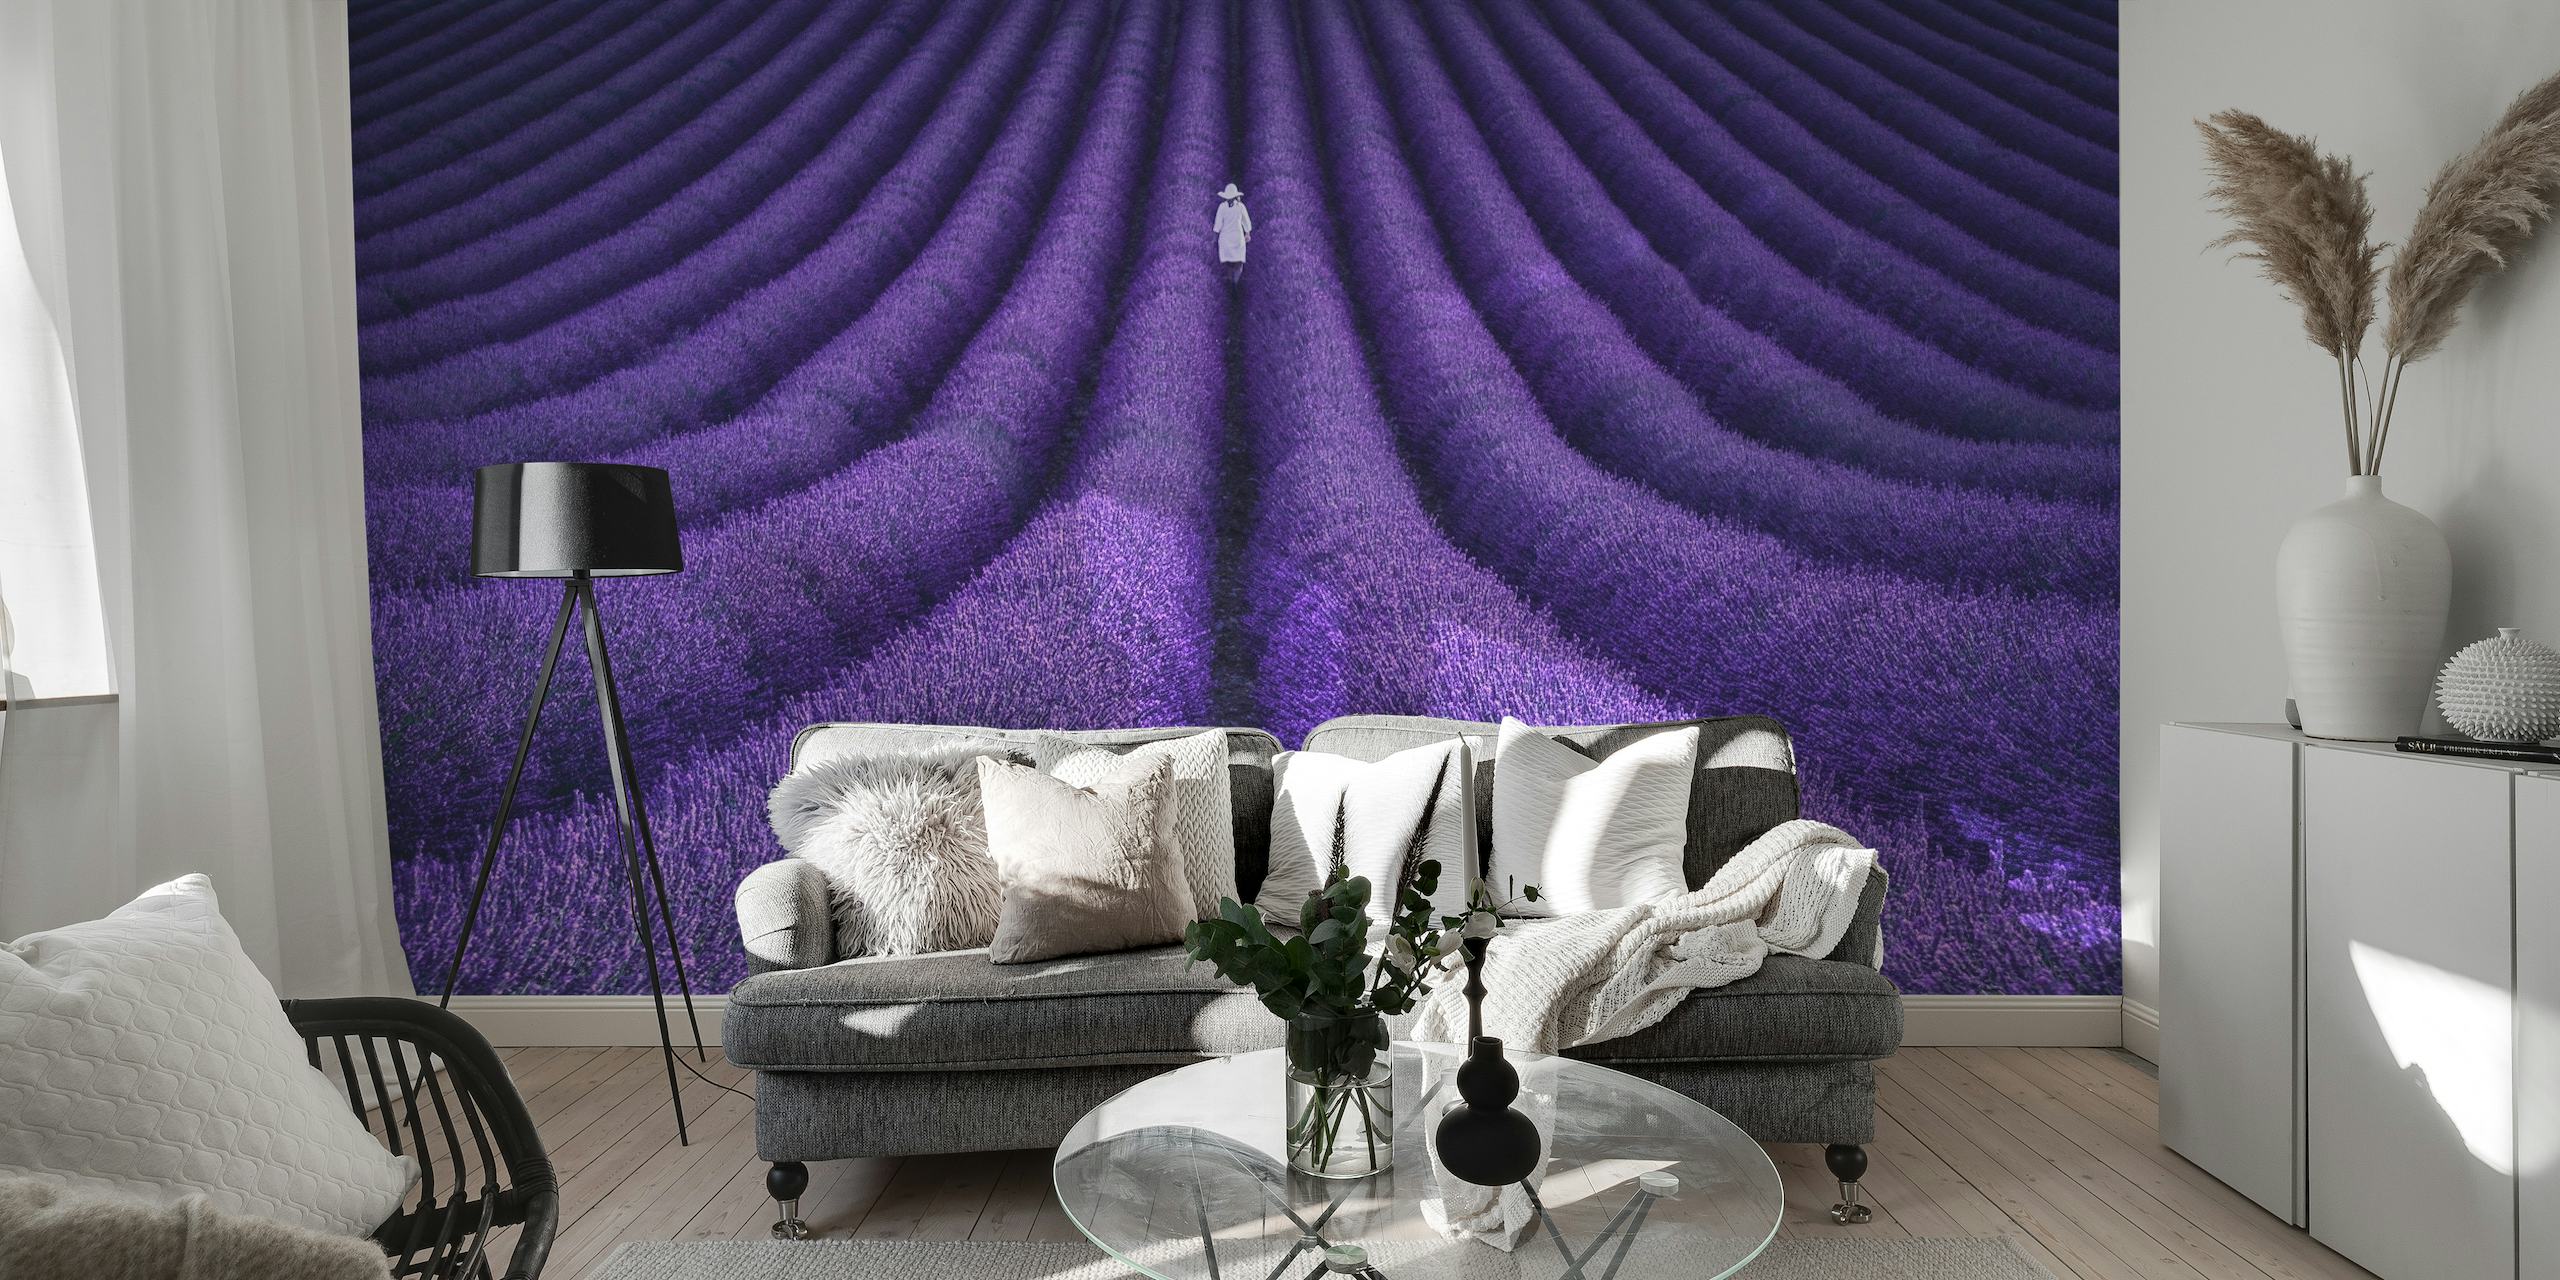 Fototapete Lavendelfeld mit einer einsamen Figur